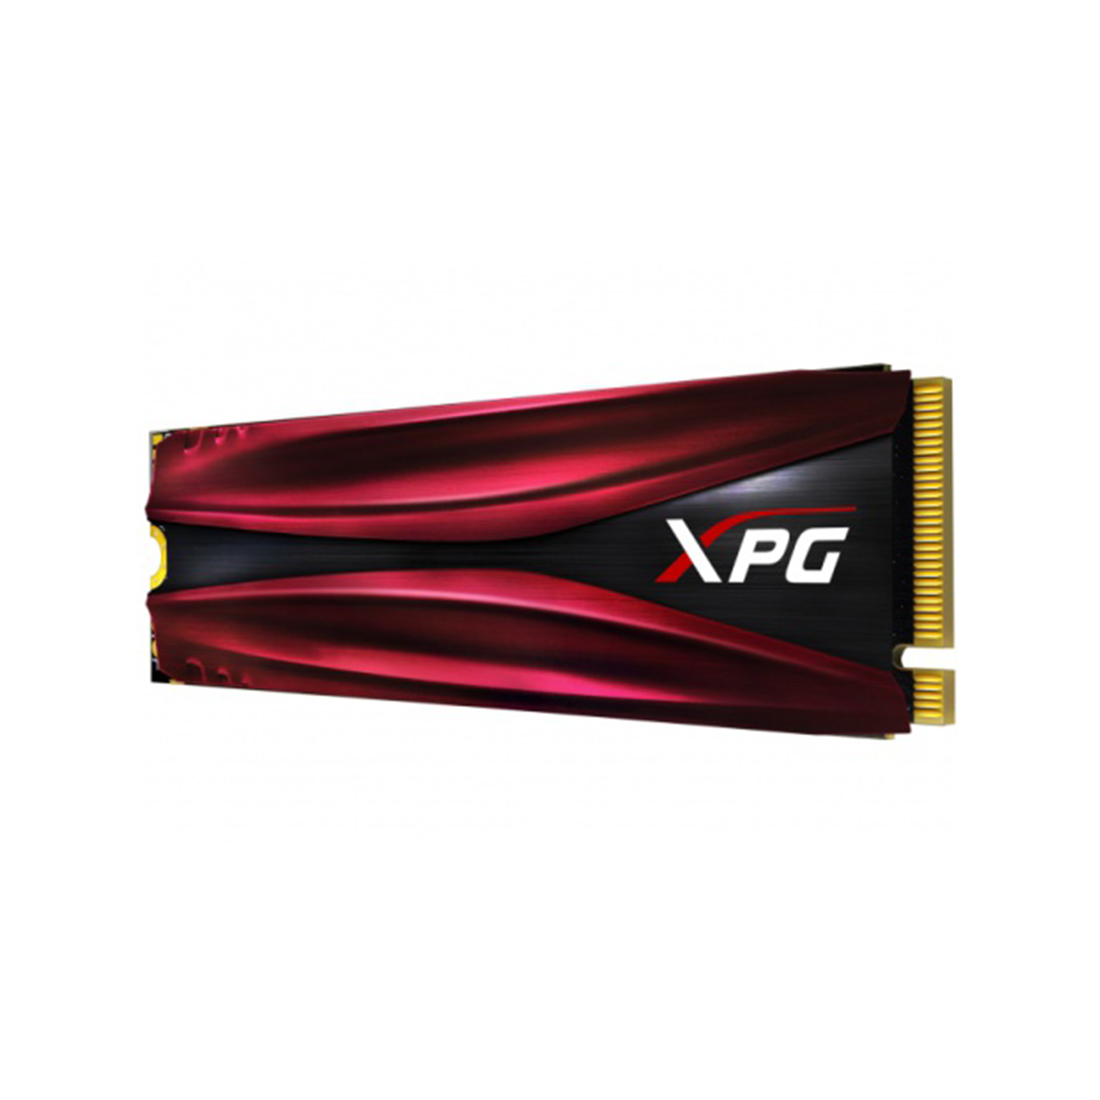 картинка Твердотельный накопитель SSD XPG GAMMIX S11 Pro 512 ГБ M.2 от магазина itmag.kz